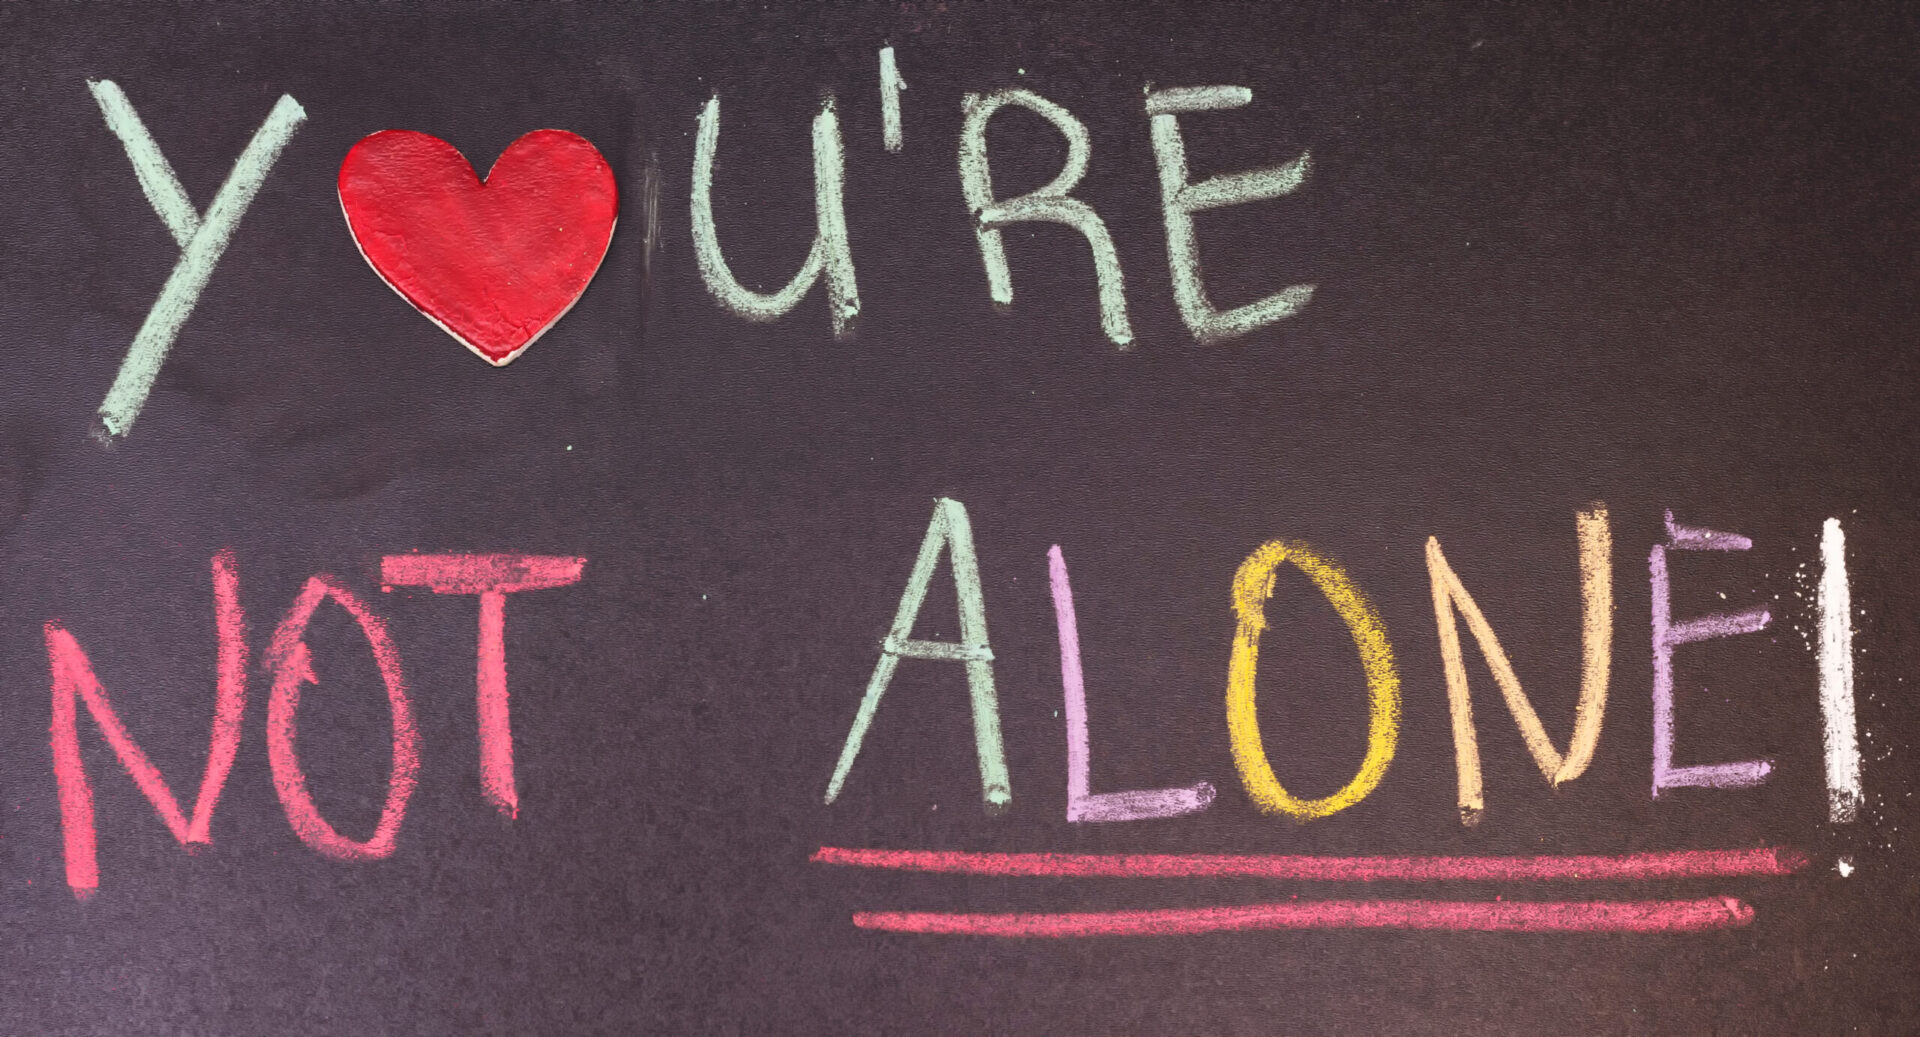 'You're not alone' written on a blackboard